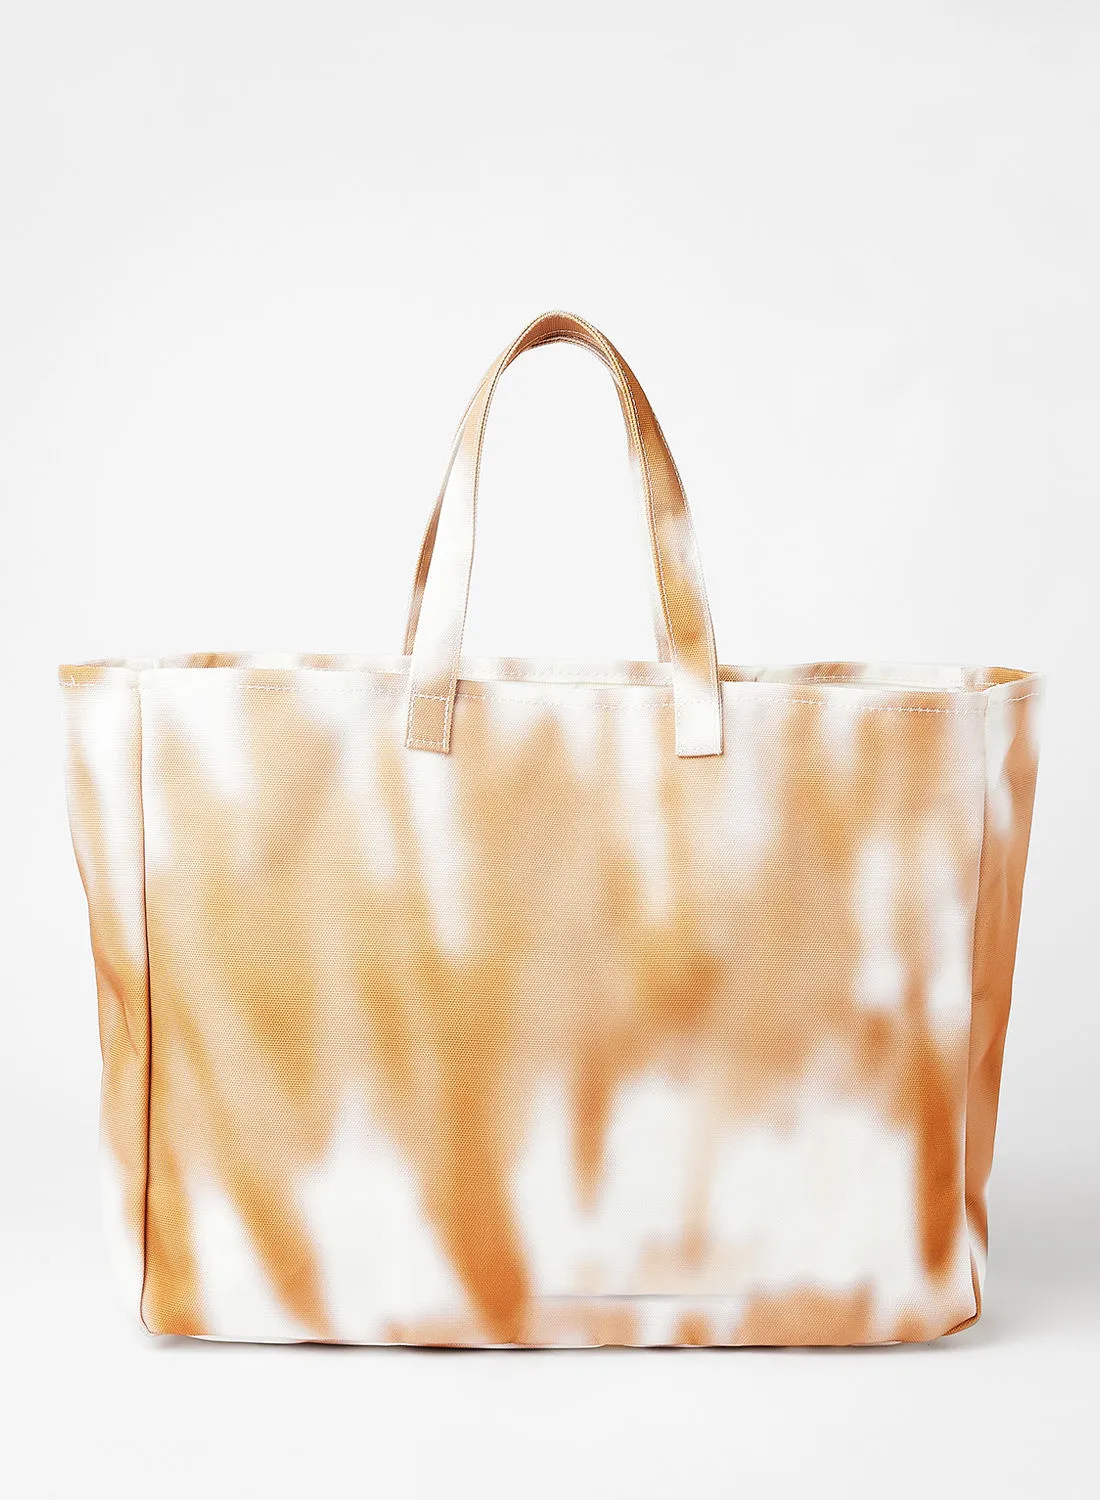 LABEL RAIL Tie-Dye Bag Tan/White